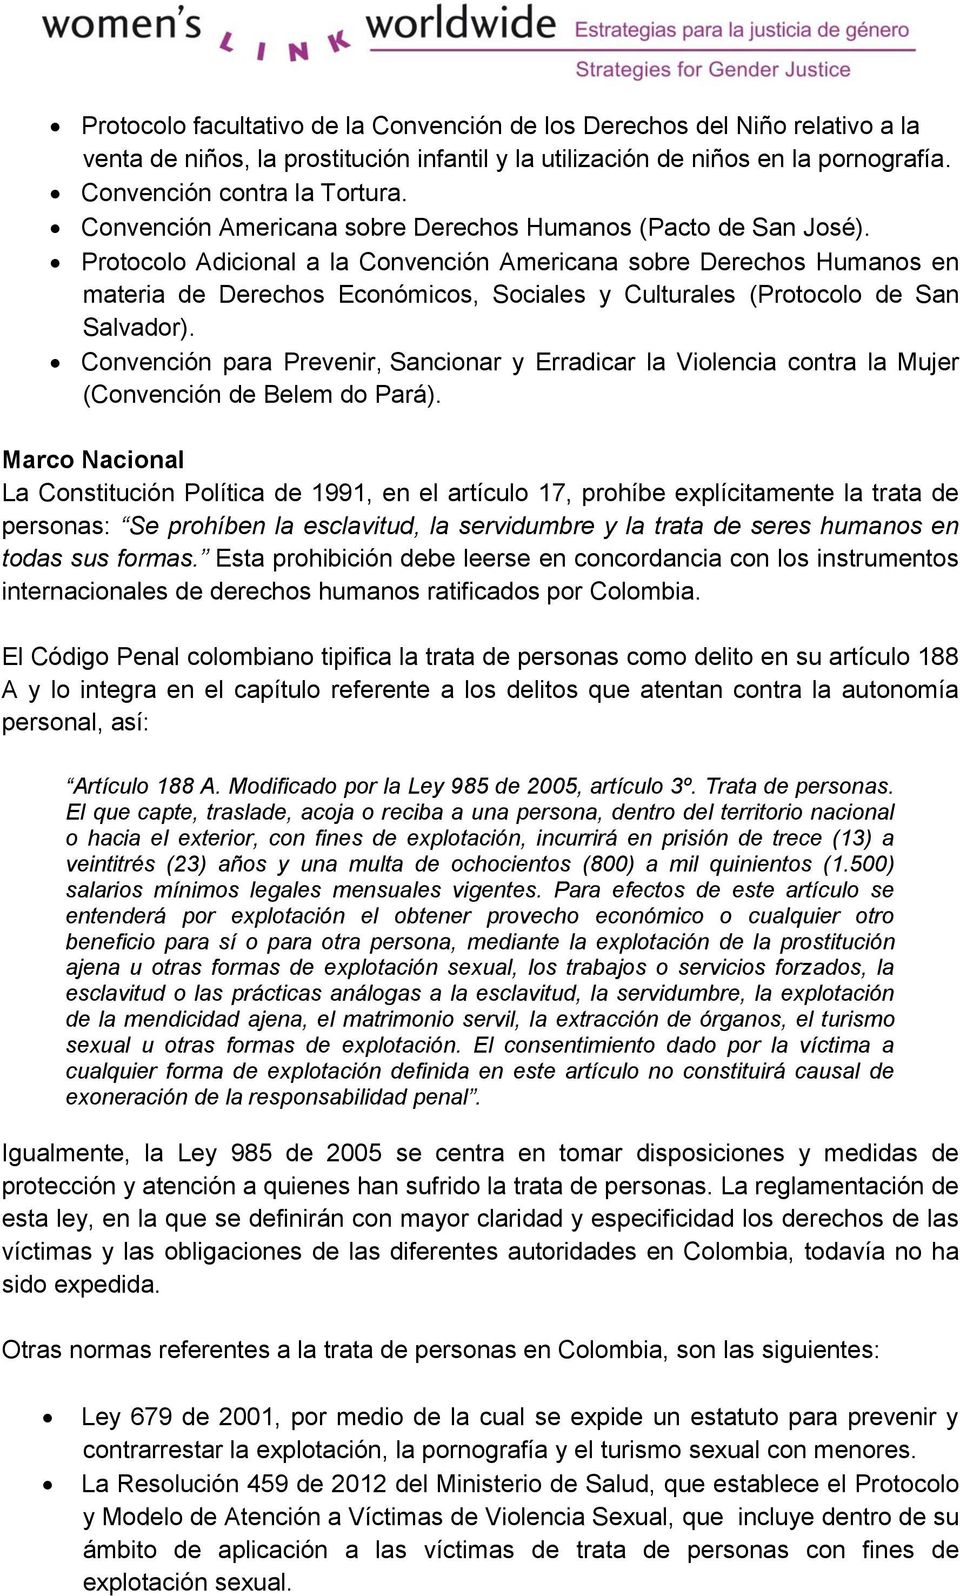 Protocolo Adicional a la Convención Americana sobre Derechos Humanos en materia de Derechos Económicos, Sociales y Culturales (Protocolo de San Salvador).